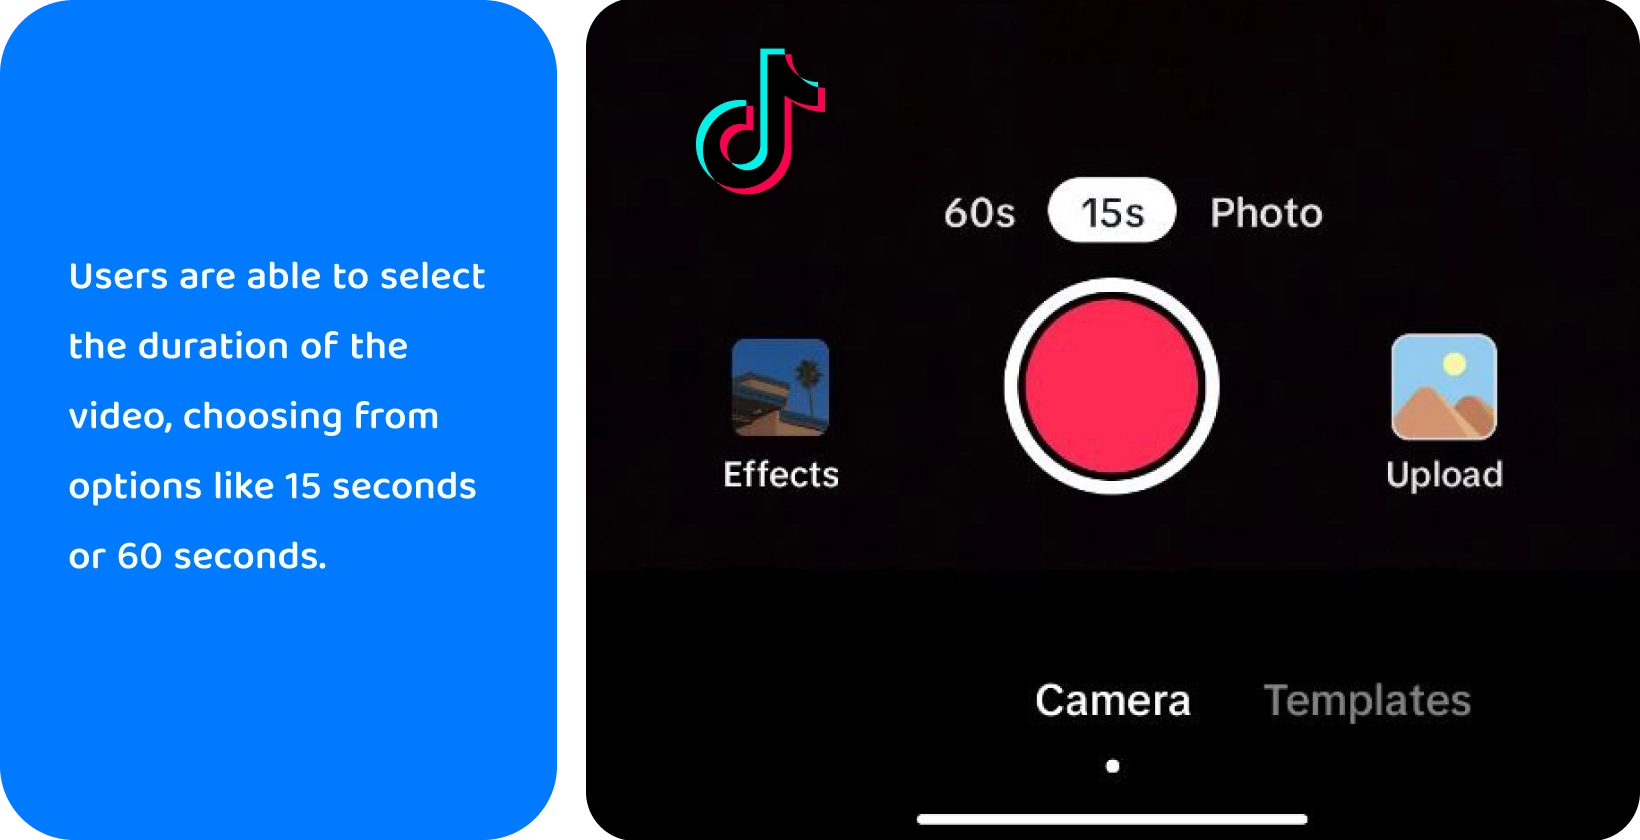 TikTok ierakstīšanas saskarne ar iespējām pievienot skaņu, pagriezt kameru, lietot filtrus, izmantot taimeri un daudz ko citu radošai video veidošanai.
